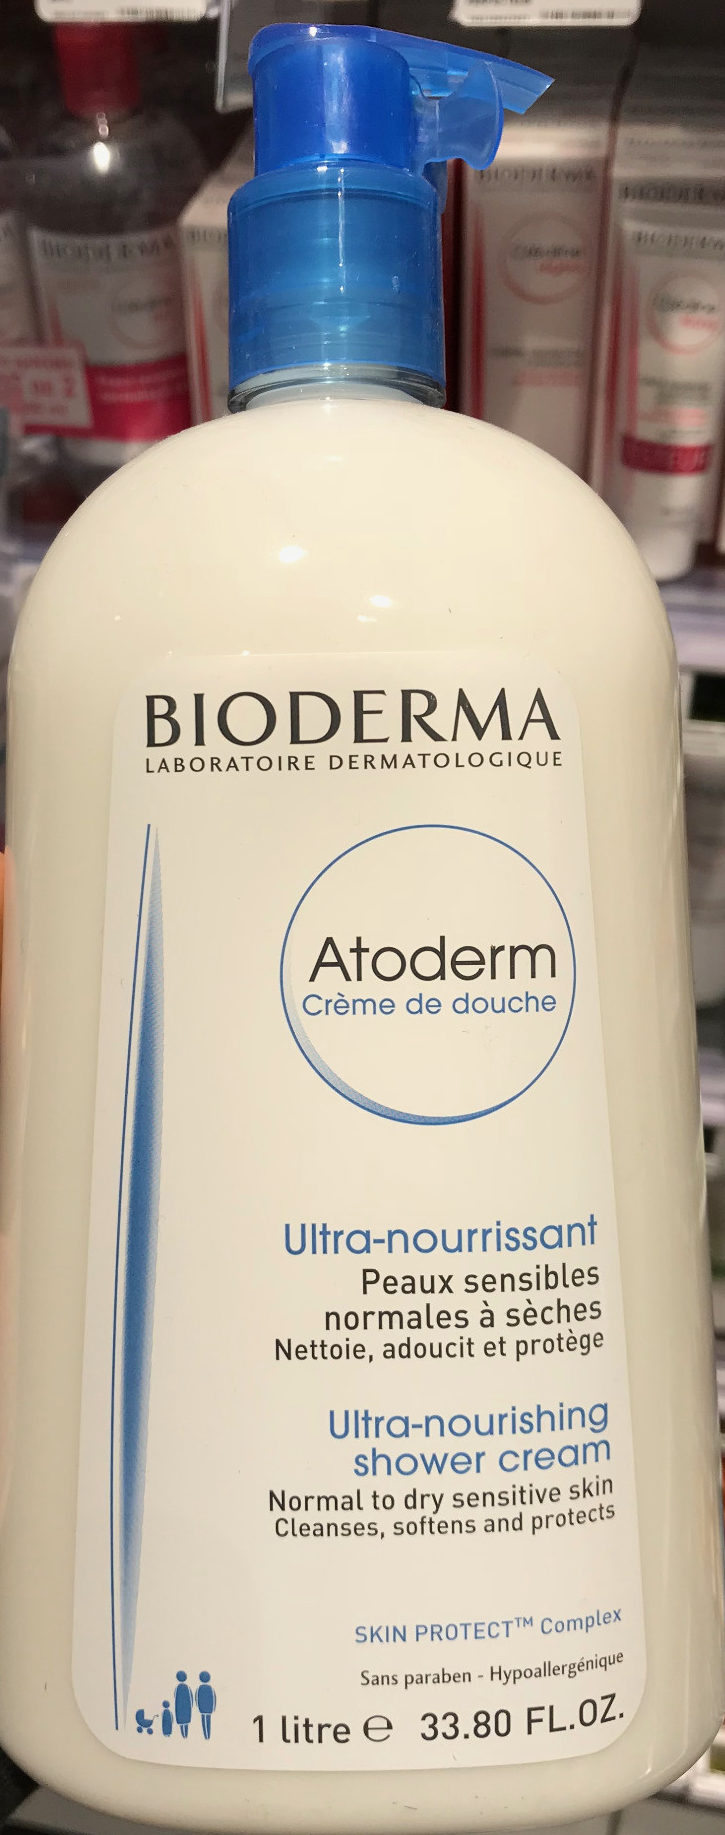 Atoderm Crème de douche - Produit - fr